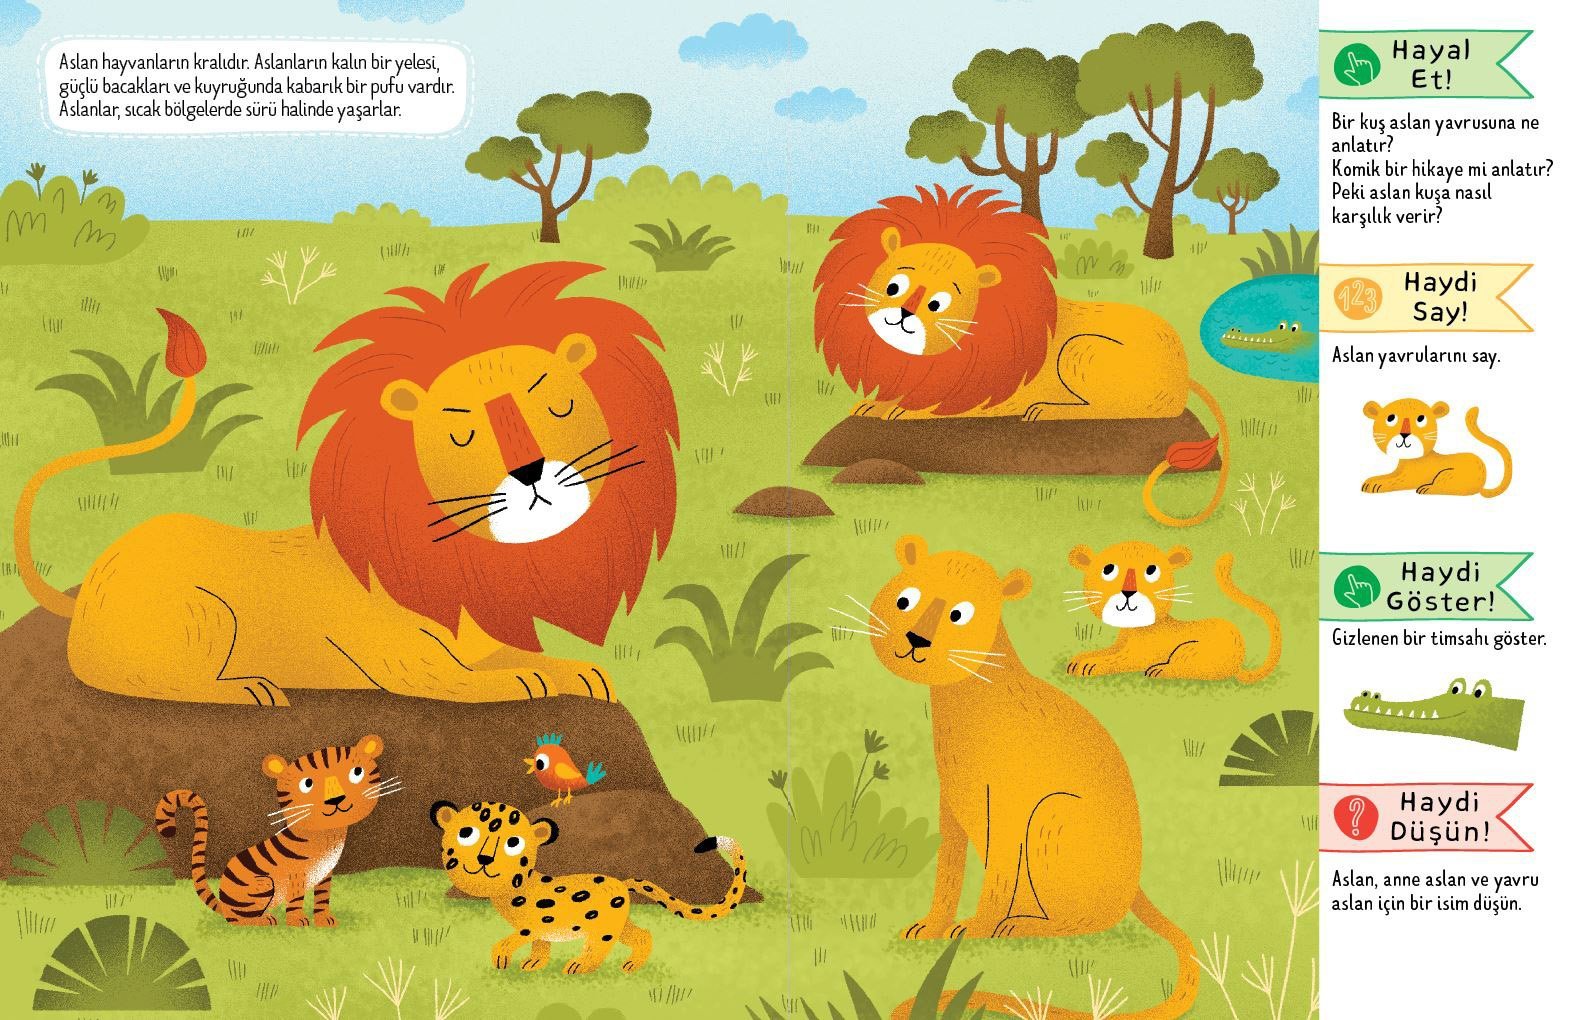 Eğlenceli Öğretici Aktivite Kitabı - Doğal Yaşamda Safari